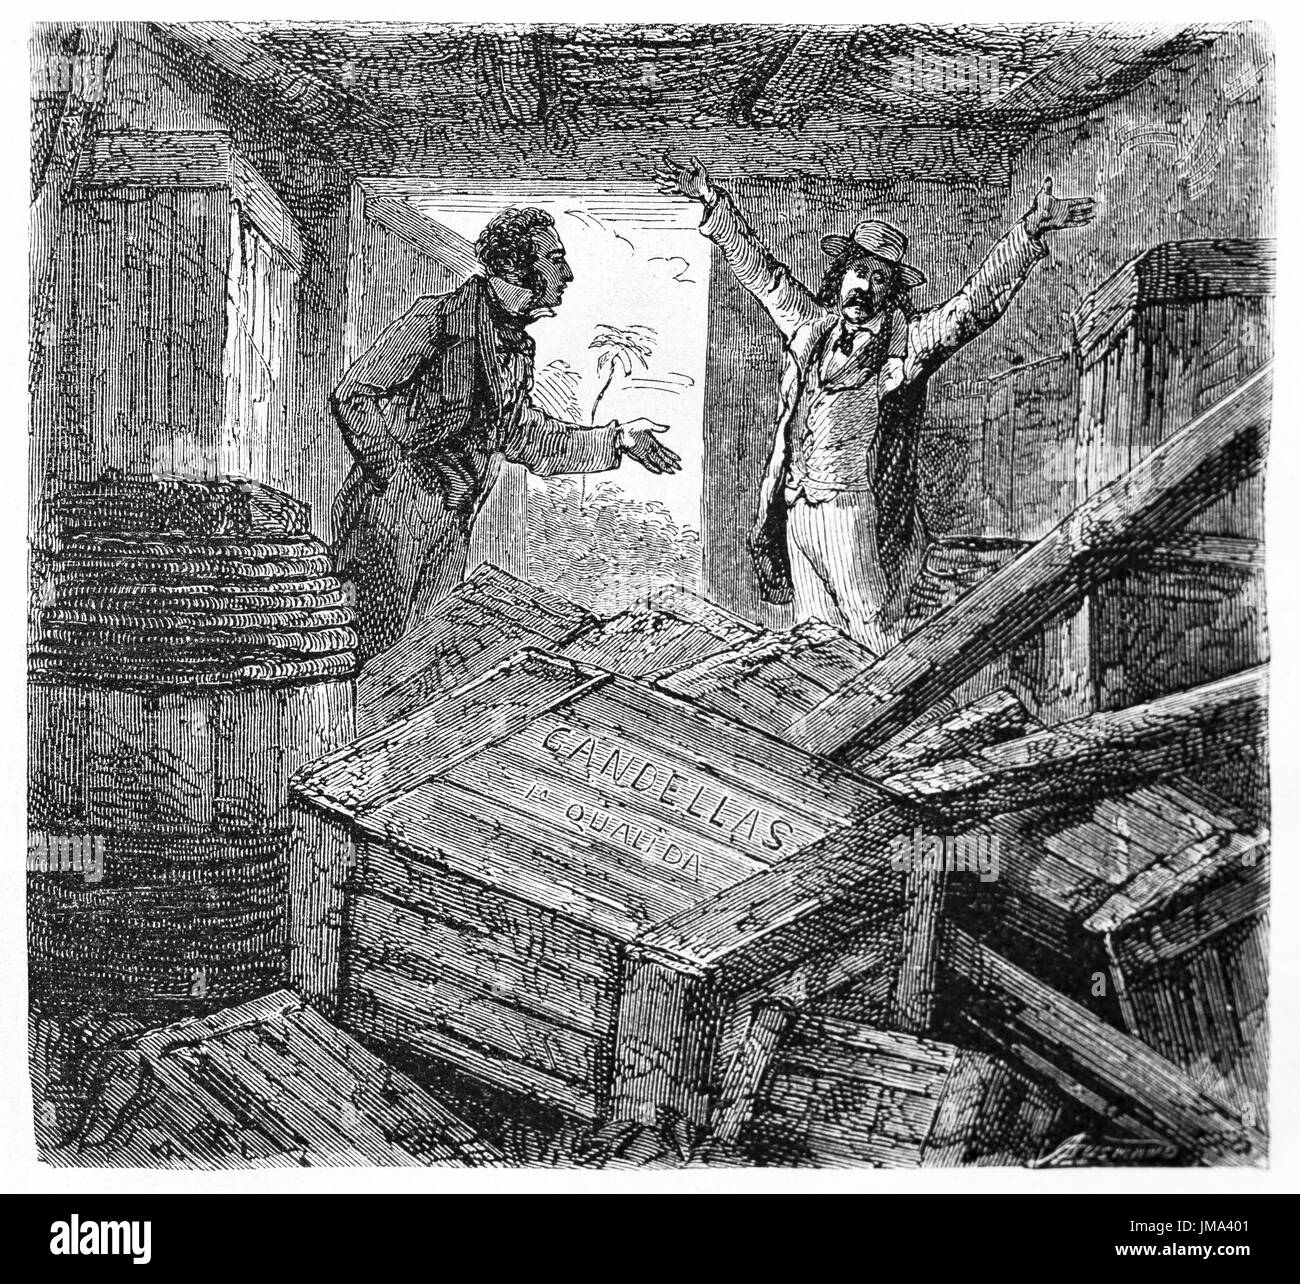 Voyageur se plaignant d'une chambre désordonnée pleine de caisses en bois qui lui ont été attribuées au Brésil. L'art de la gravure antique auteur non identifié, le Tour du monde, 1861 Banque D'Images